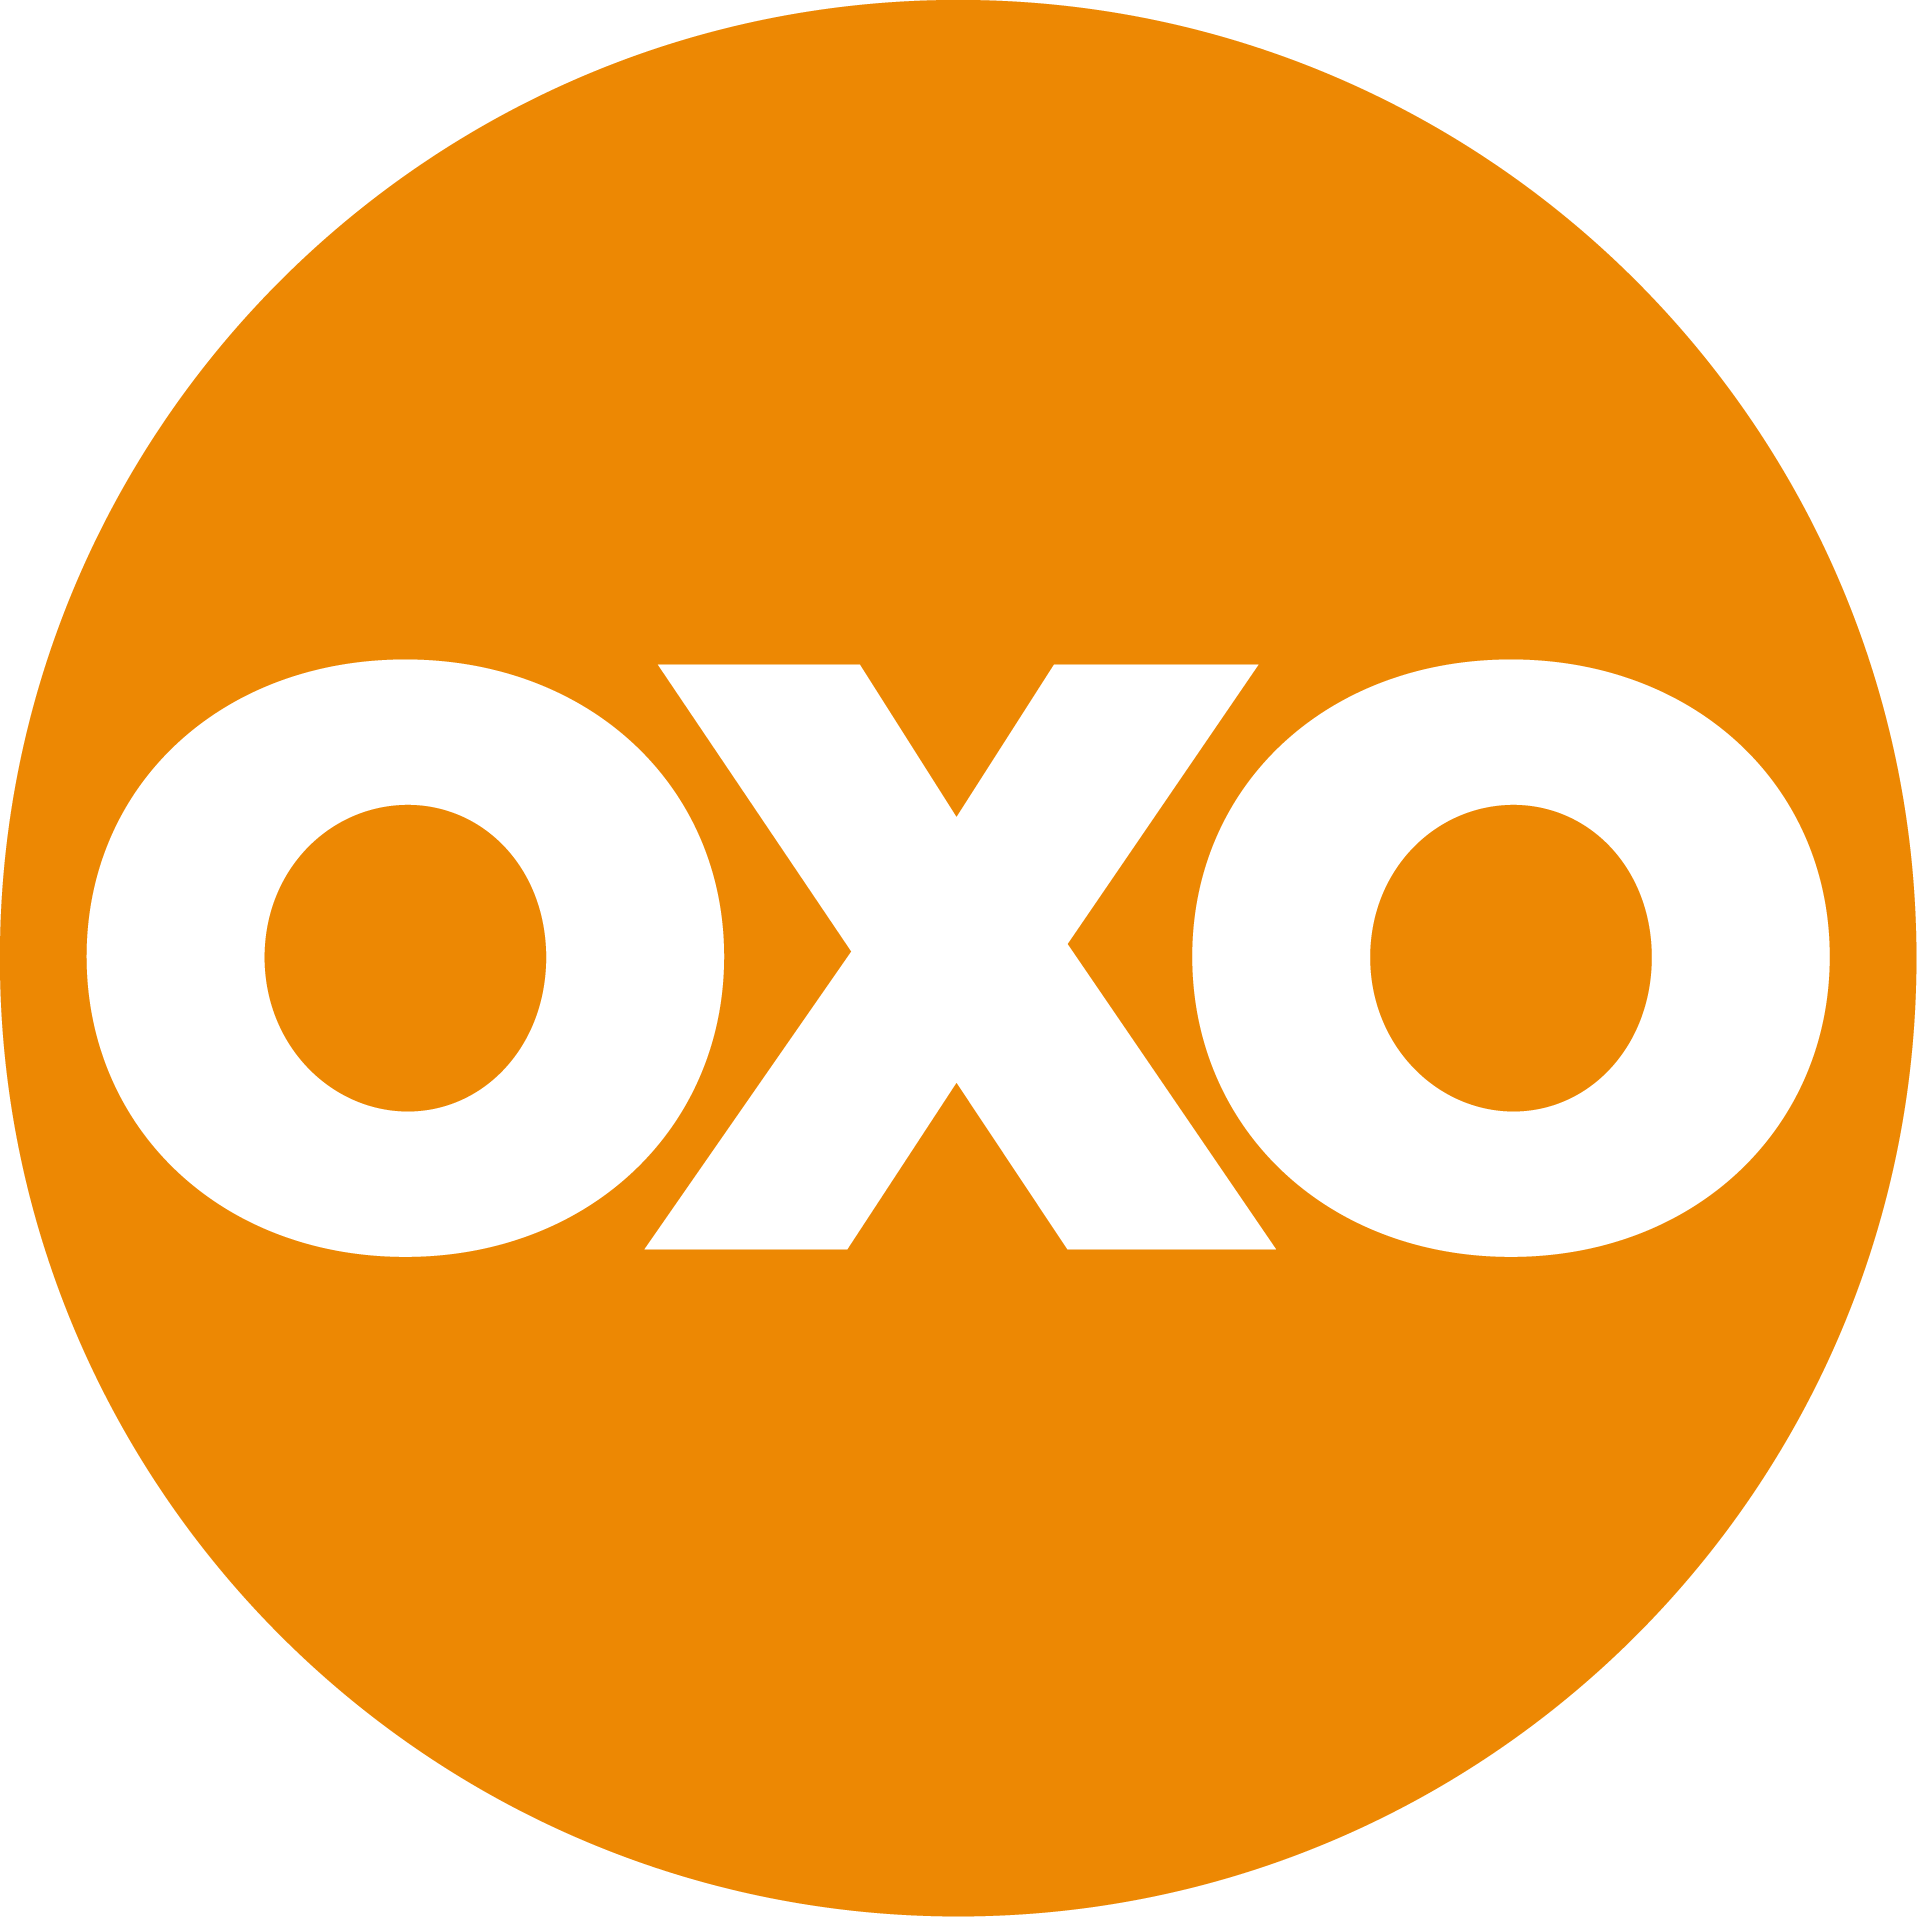 OXO Innovation